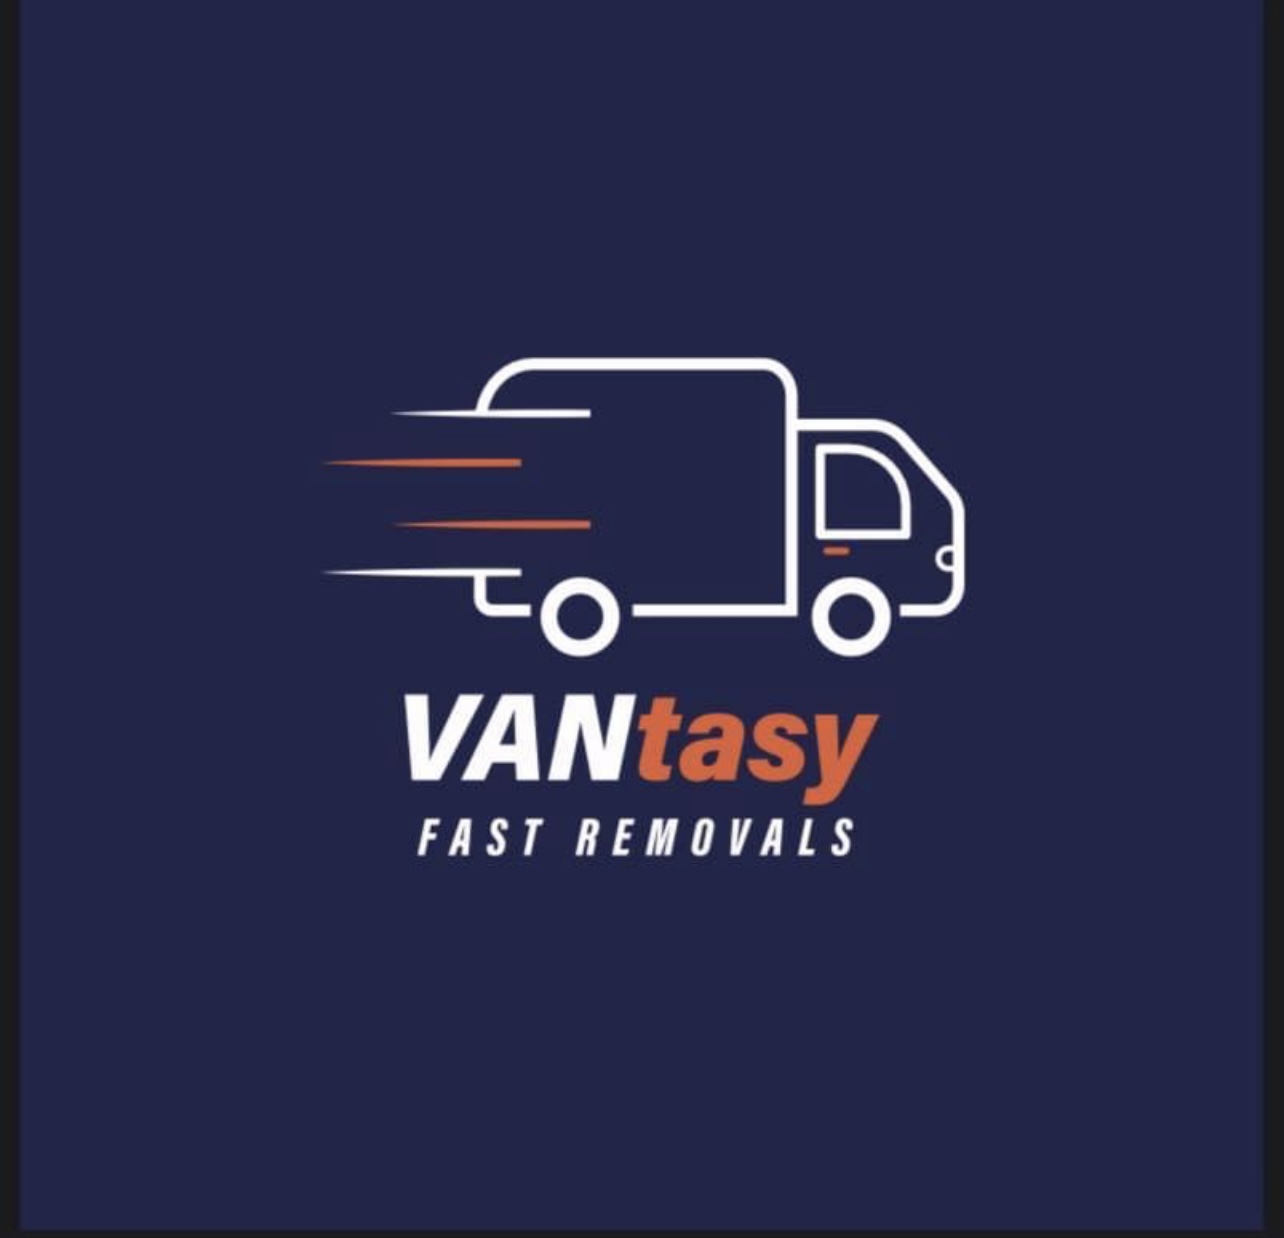 VANtasy fast removals